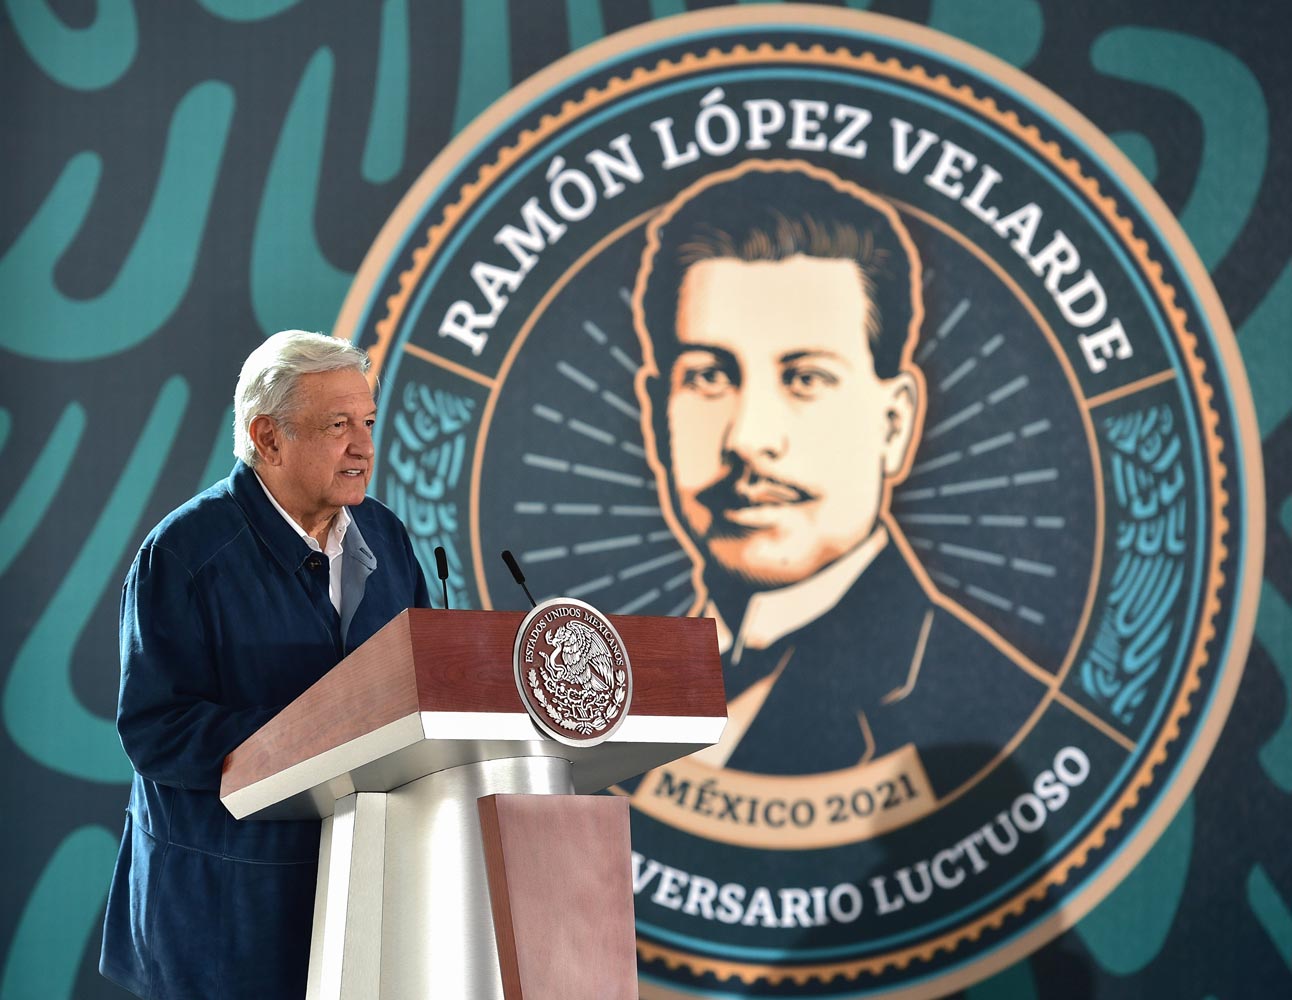 Recuerdan a López Velarde a 100 años de su fallecimiento